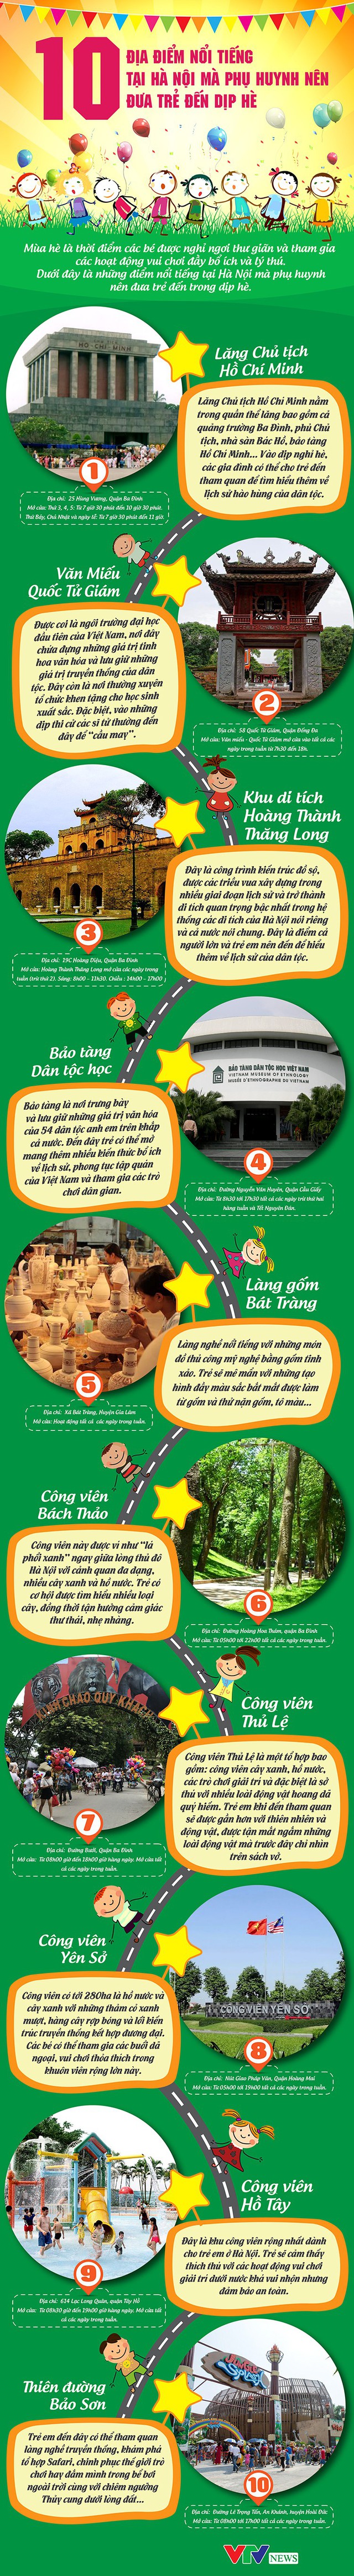 10 địa điểm nổi tiếng tại Hà Nội mà phụ huynh nên đưa trẻ đến dịp hè - Ảnh 1.